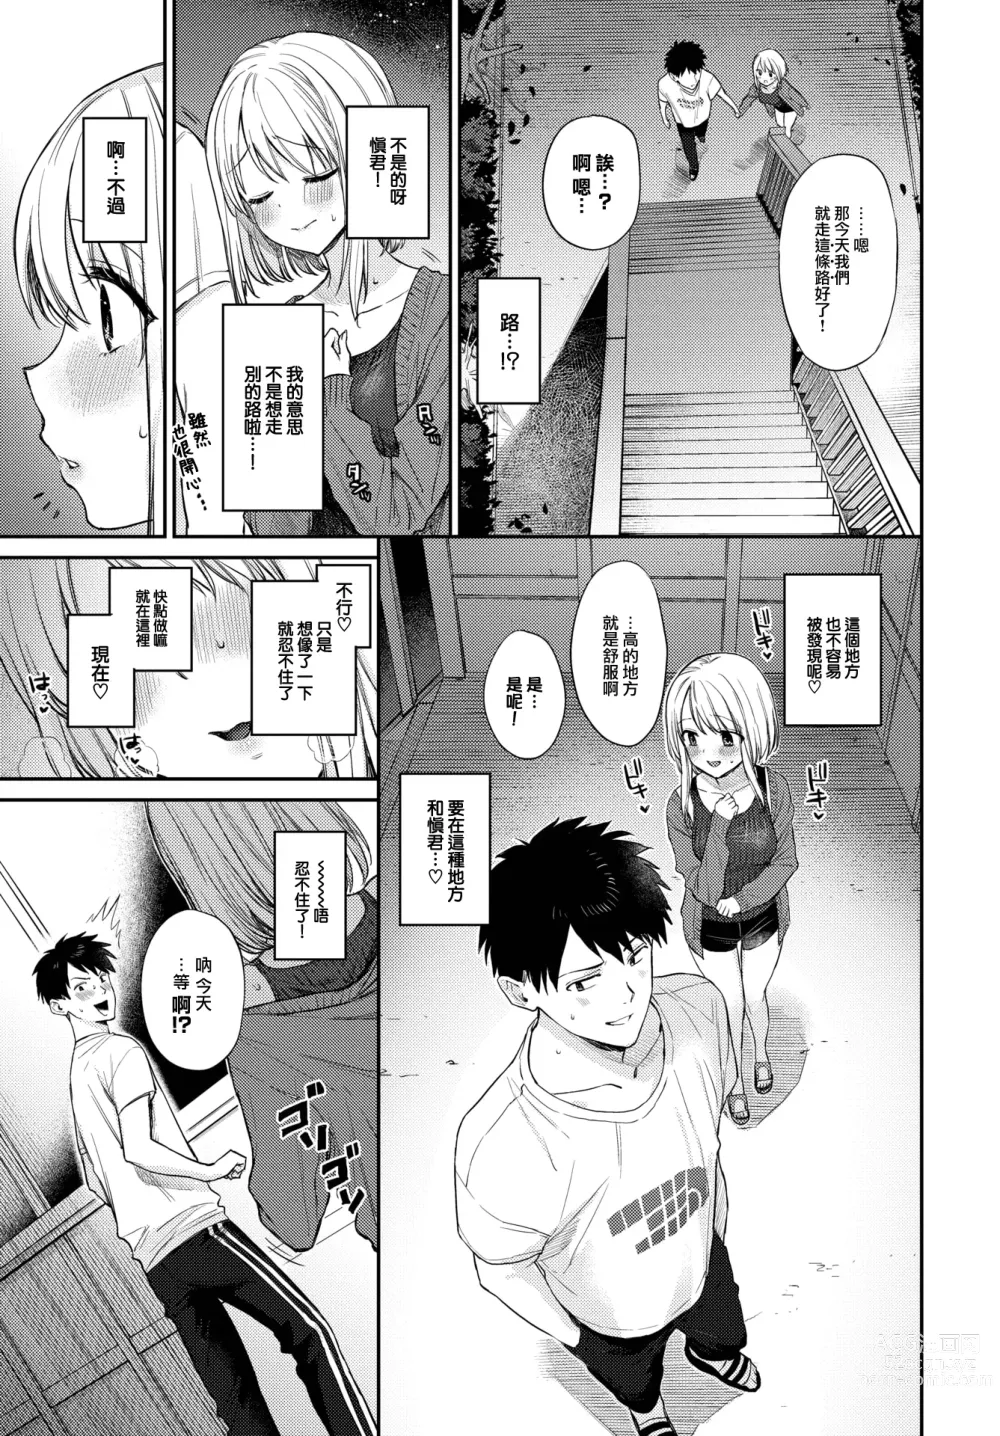 Page 4 of manga Yoru no naisho2